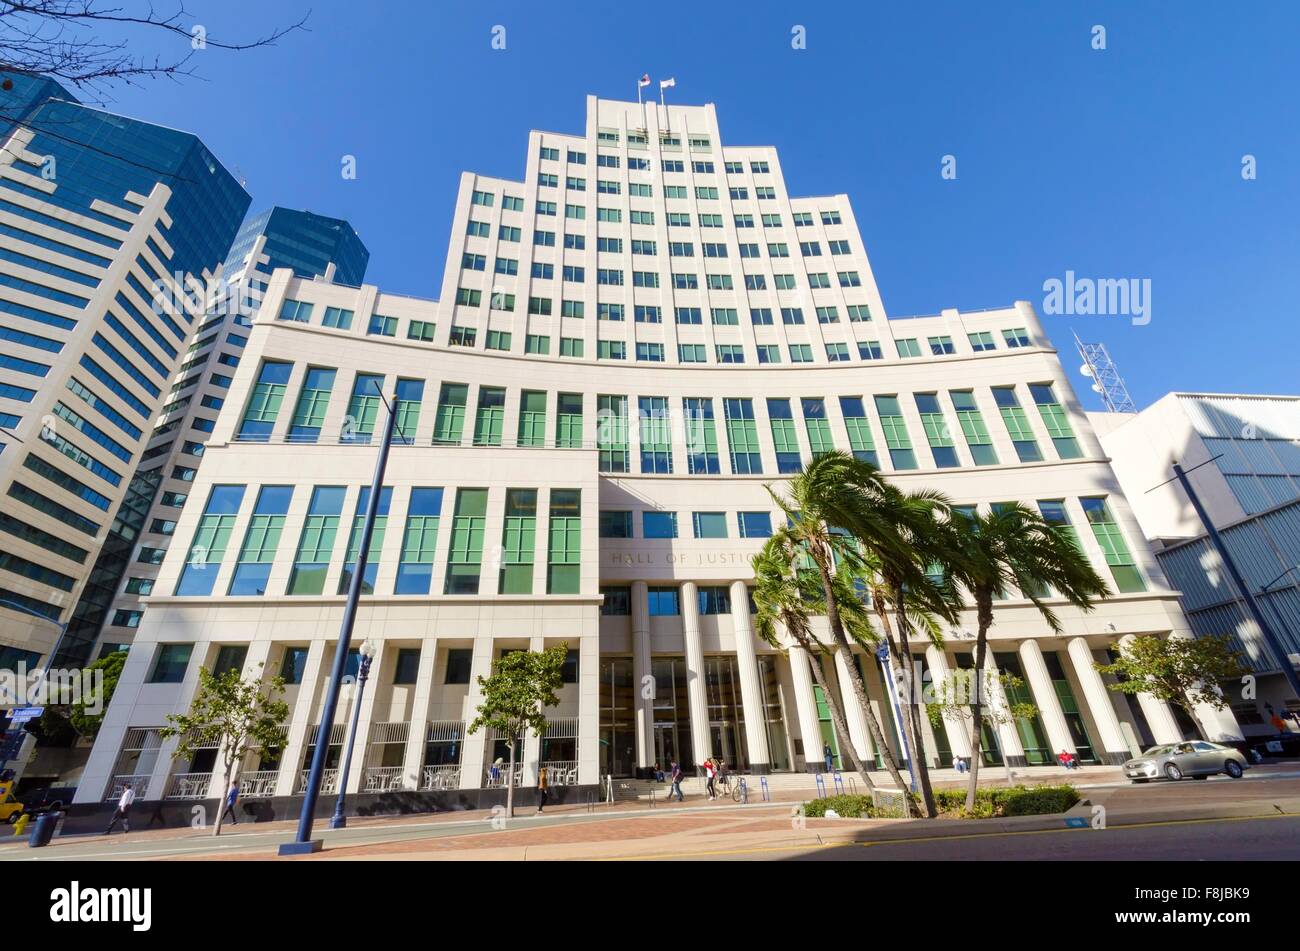 Die Hall of Justice Gerichtsgebäude am Broadway in Downtown San Diego, Kalifornien, Vereinigte Staaten von Amerika. Stockfoto